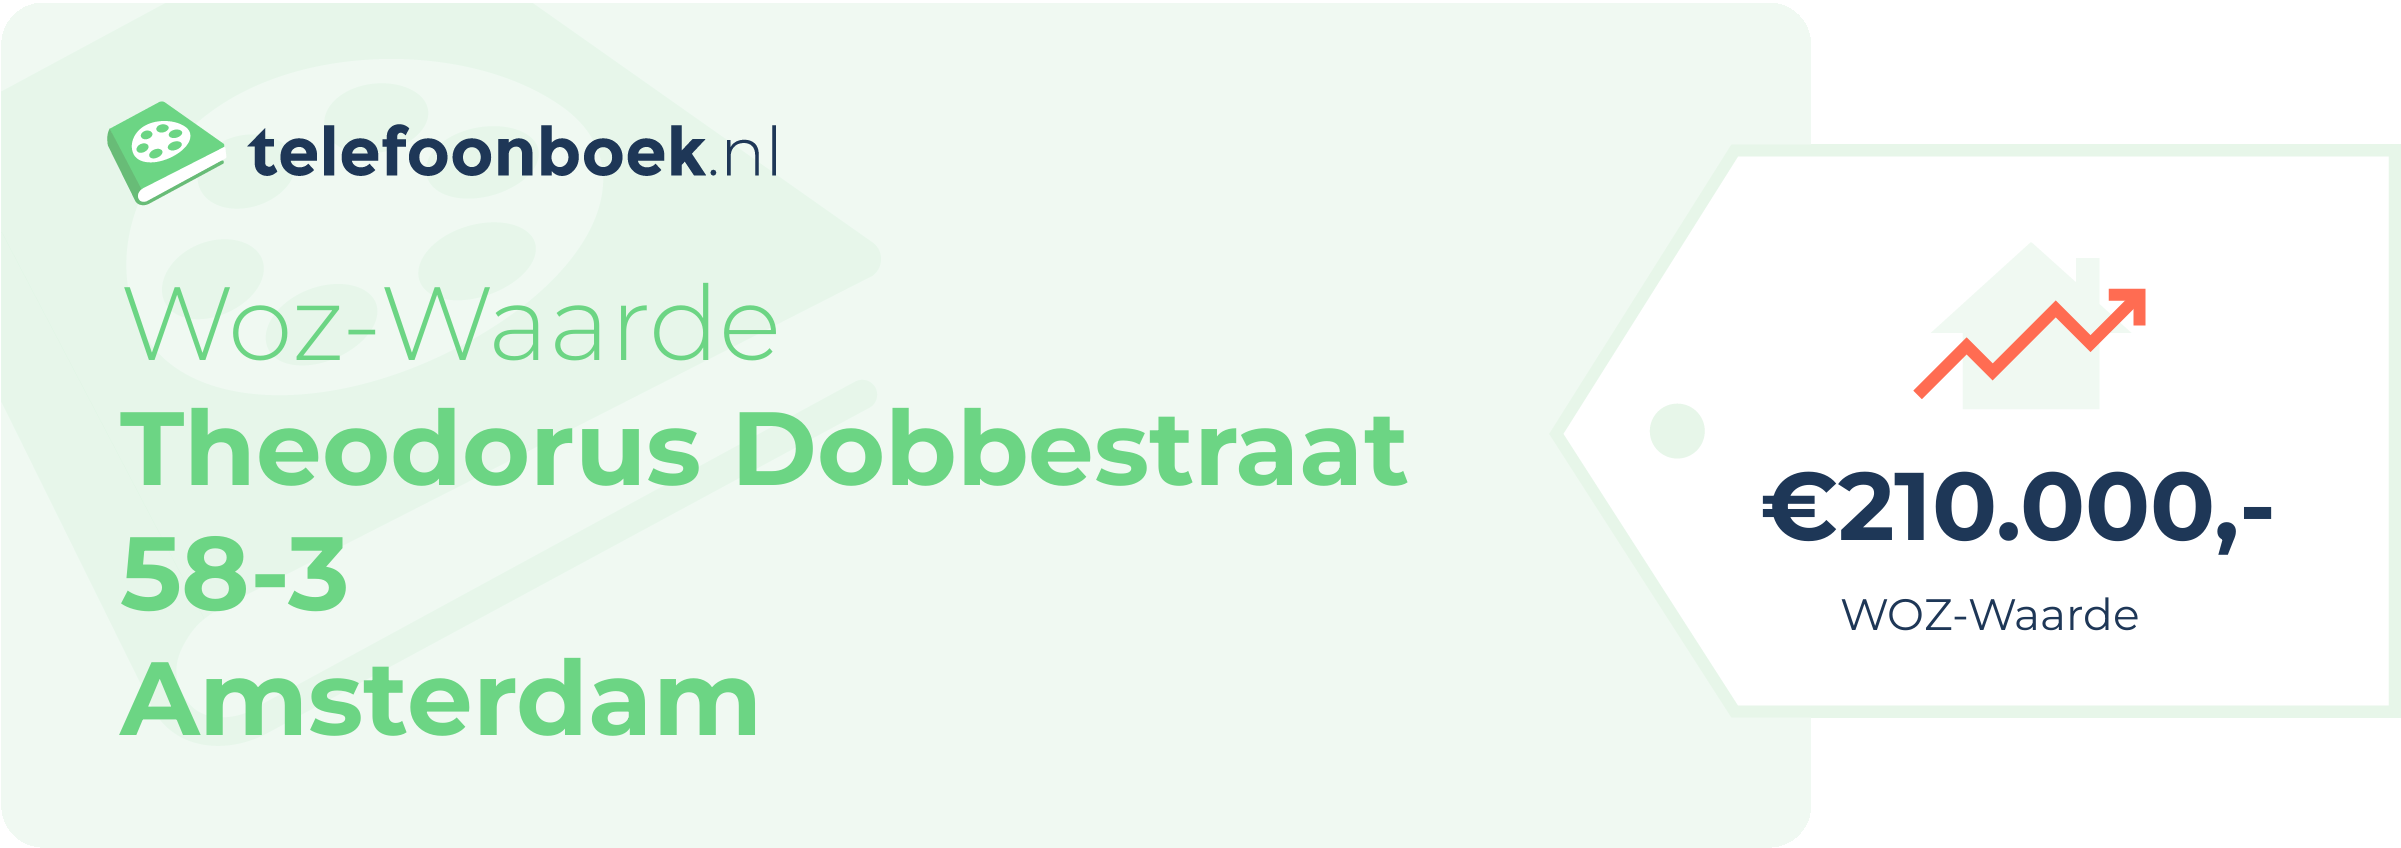 WOZ-waarde Theodorus Dobbestraat 58-3 Amsterdam